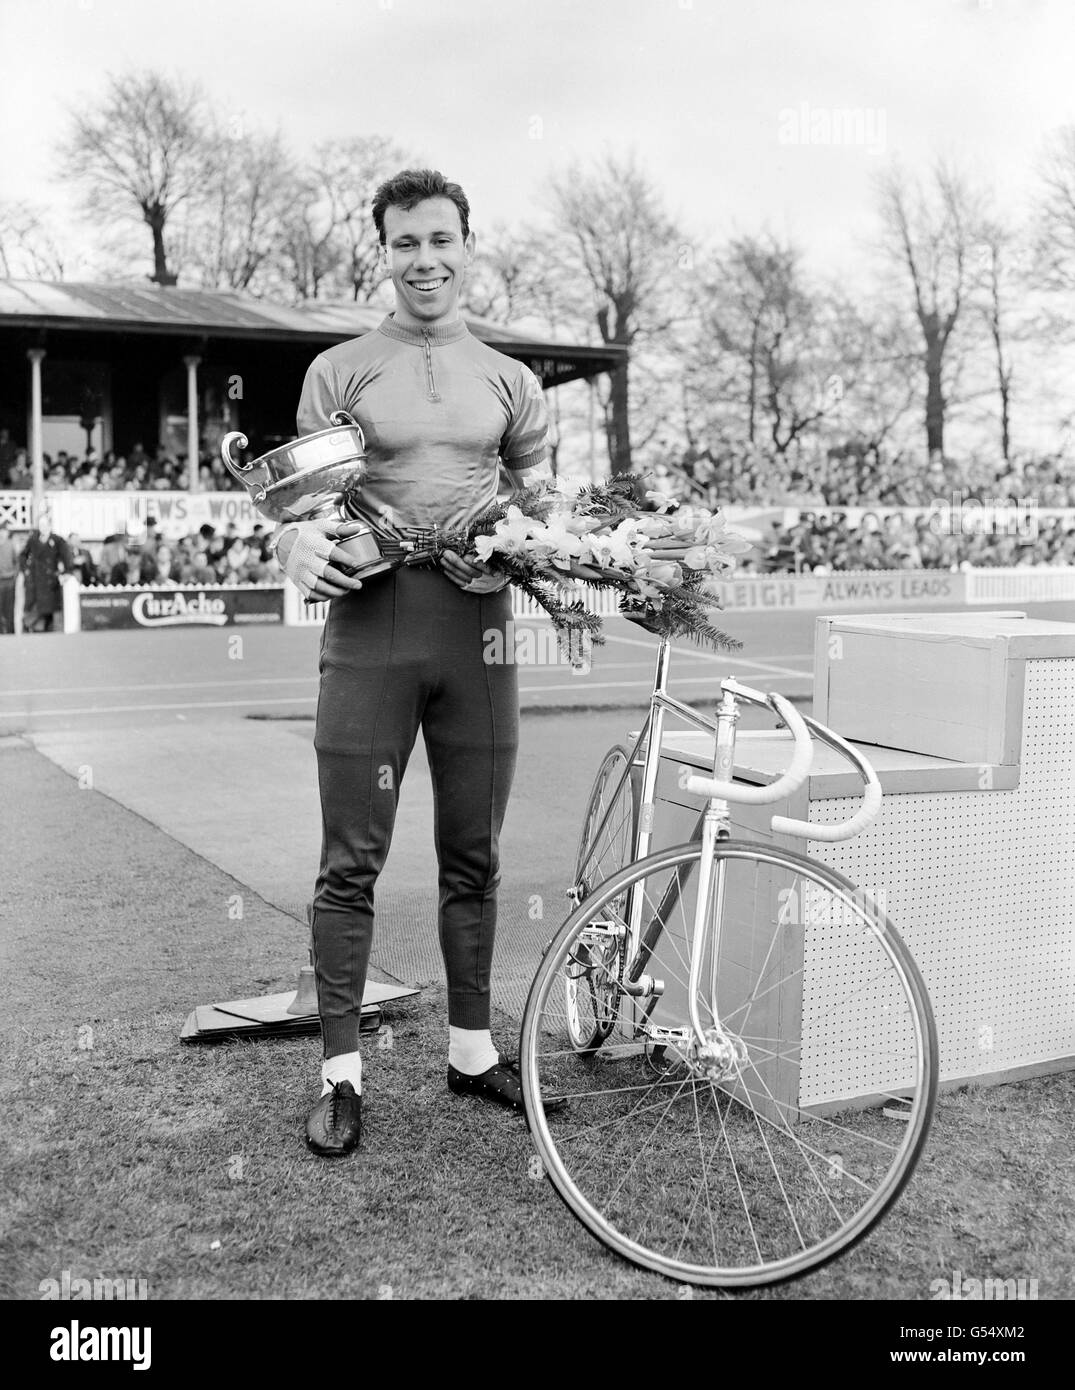 Barry Hoban (Wakefield), campione britannico di 4,000 metri, che ha vinto i nove giri Pursuit. Foto Stock